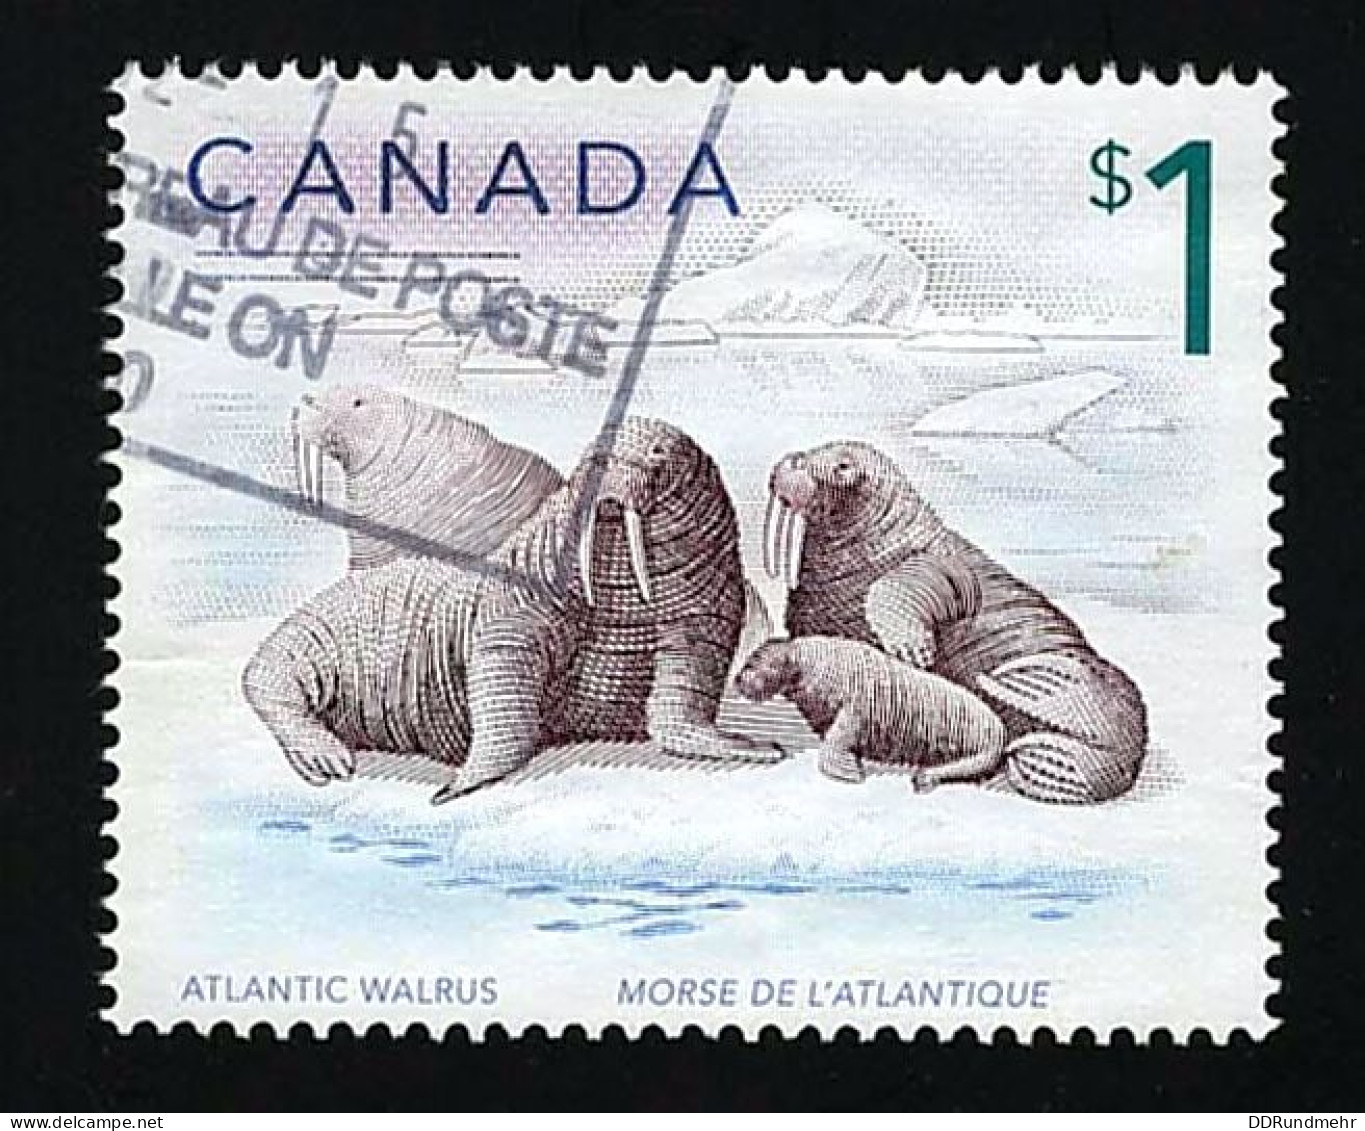 2005 Atlantic Walrus Michel CA 2300 Stamp Number CA 1689 Yvert Et Tellier CA 2183 Stanley Gibbons CA 1758 Used - Gebruikt